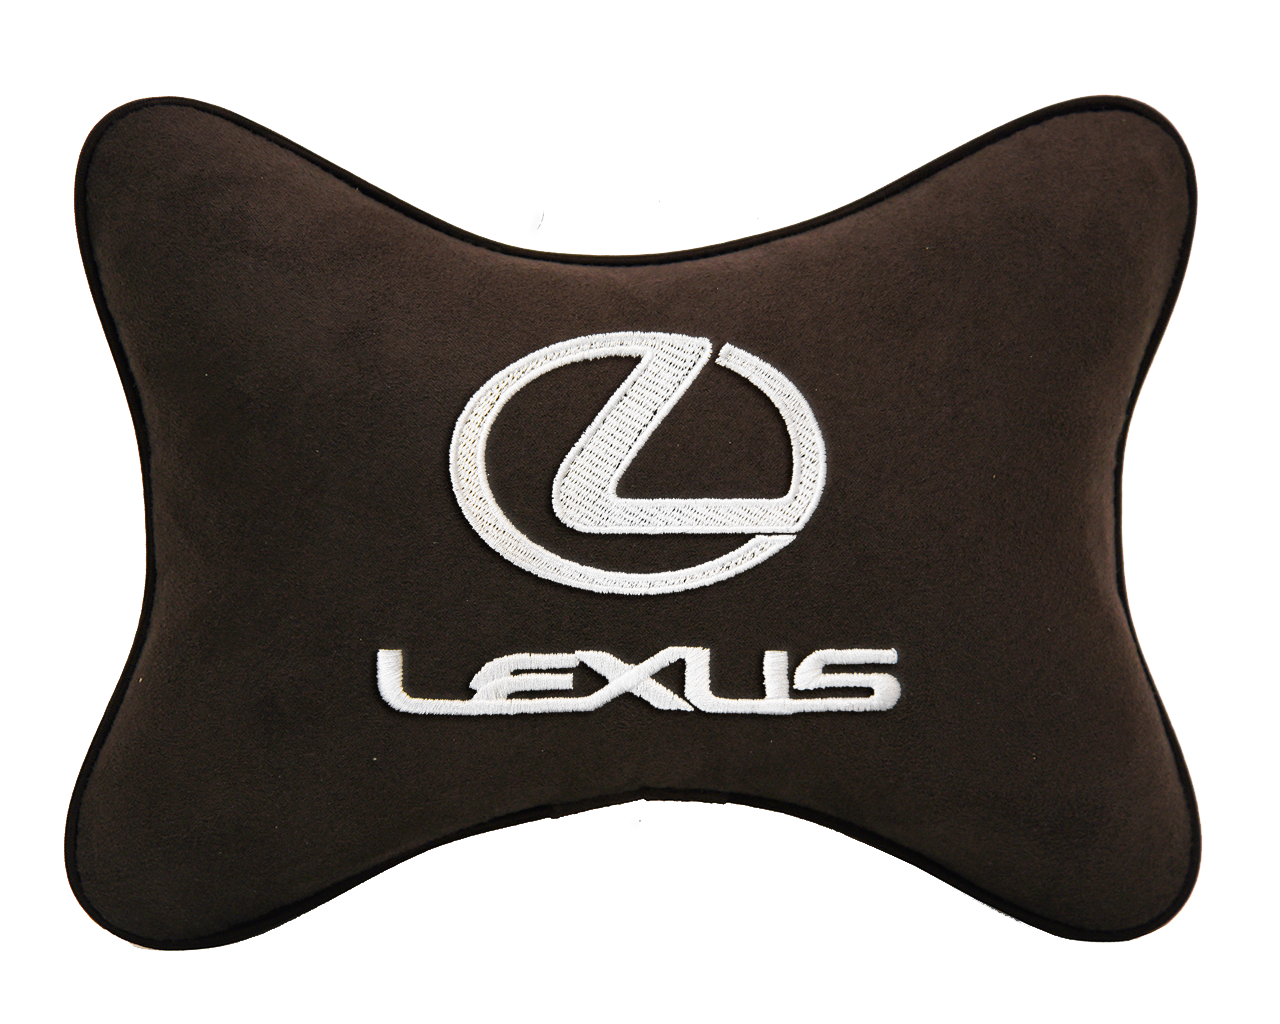 Автомобильная подушка на подголовник алькантара Coffee с логотипом автомобиля LEXUS